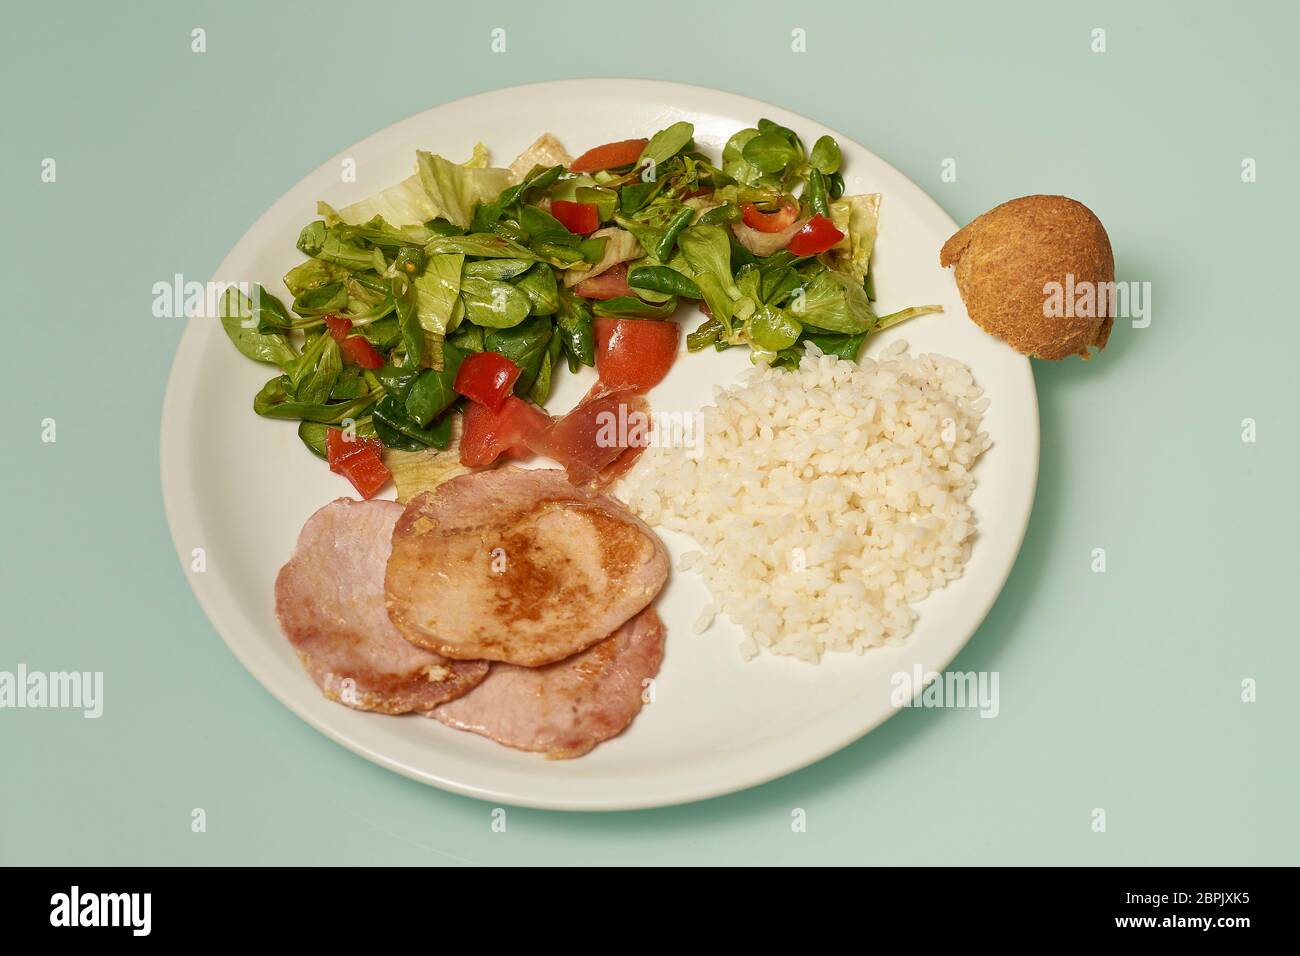 piatto sano con riso, insalata e carne a basso contenuto di grassi Foto Stock